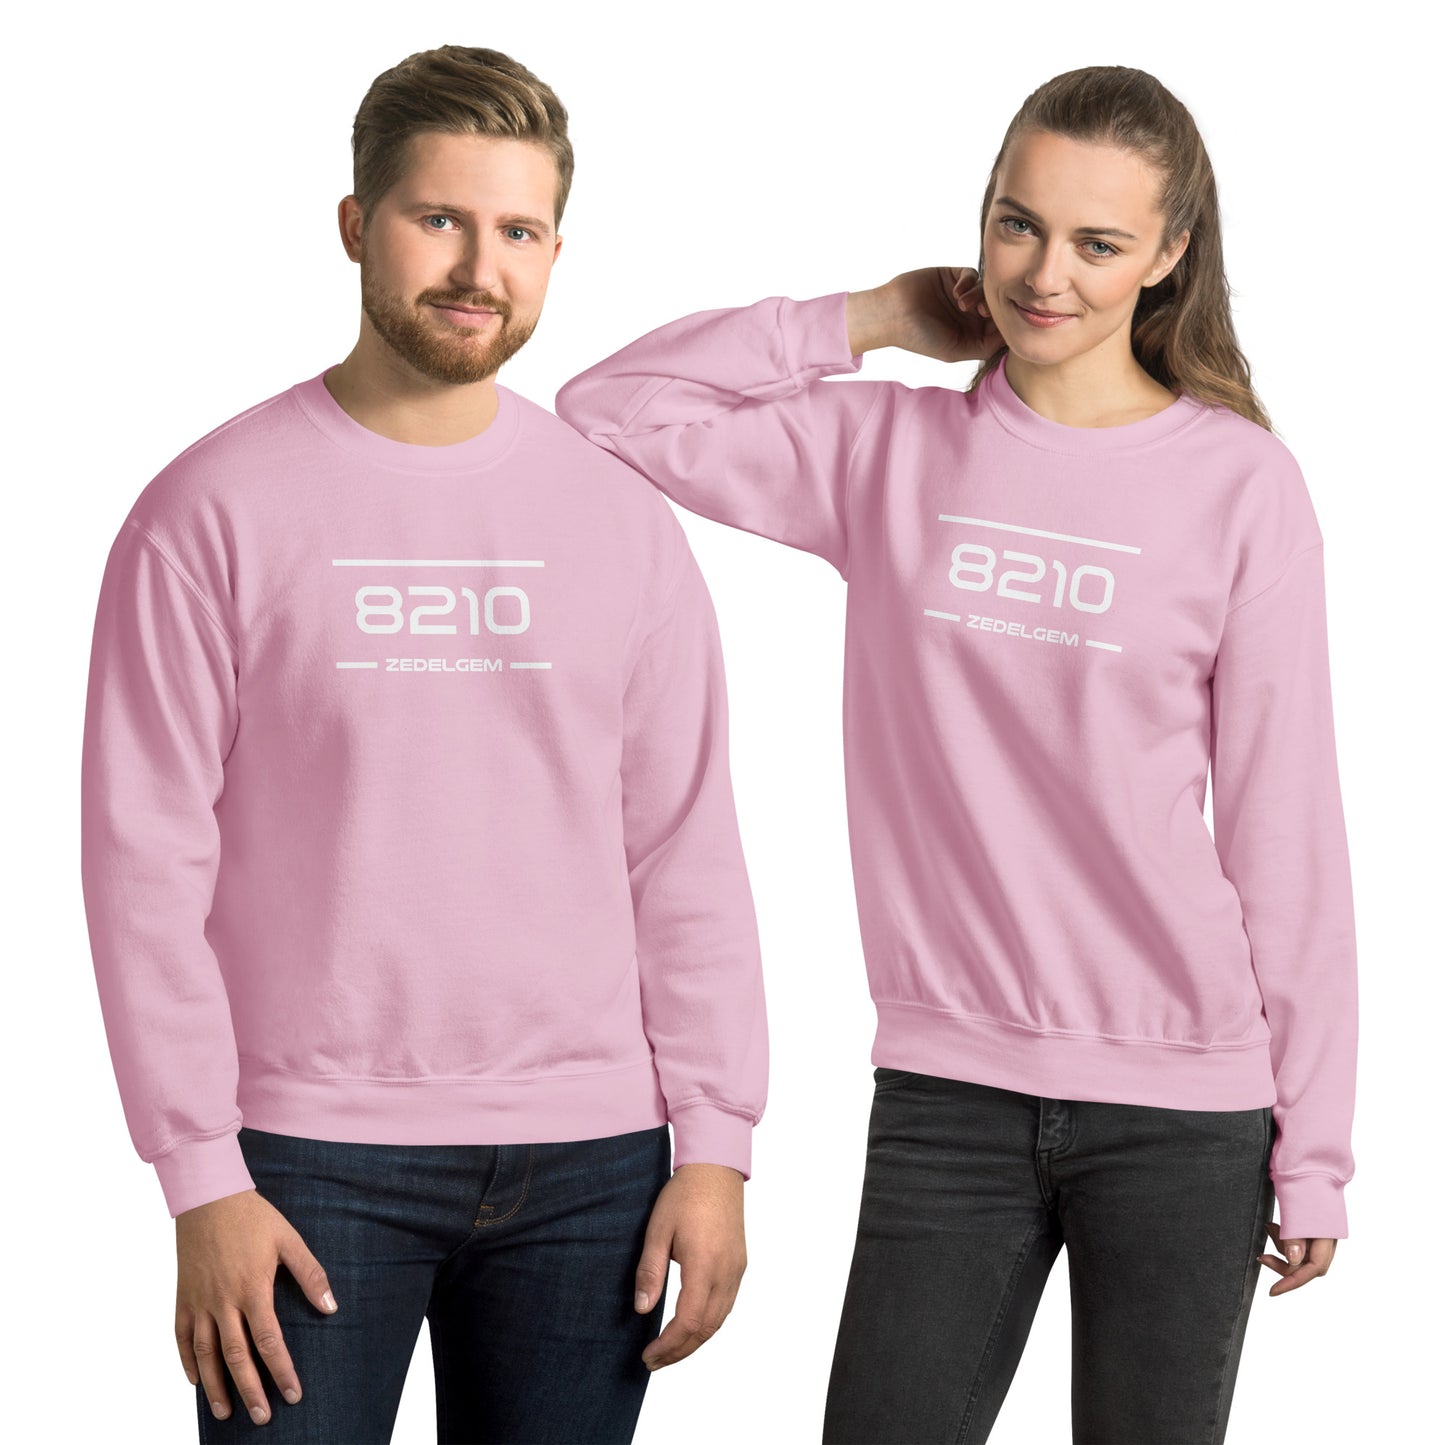 Sweater - 8210 - Zedelgem (M/V)